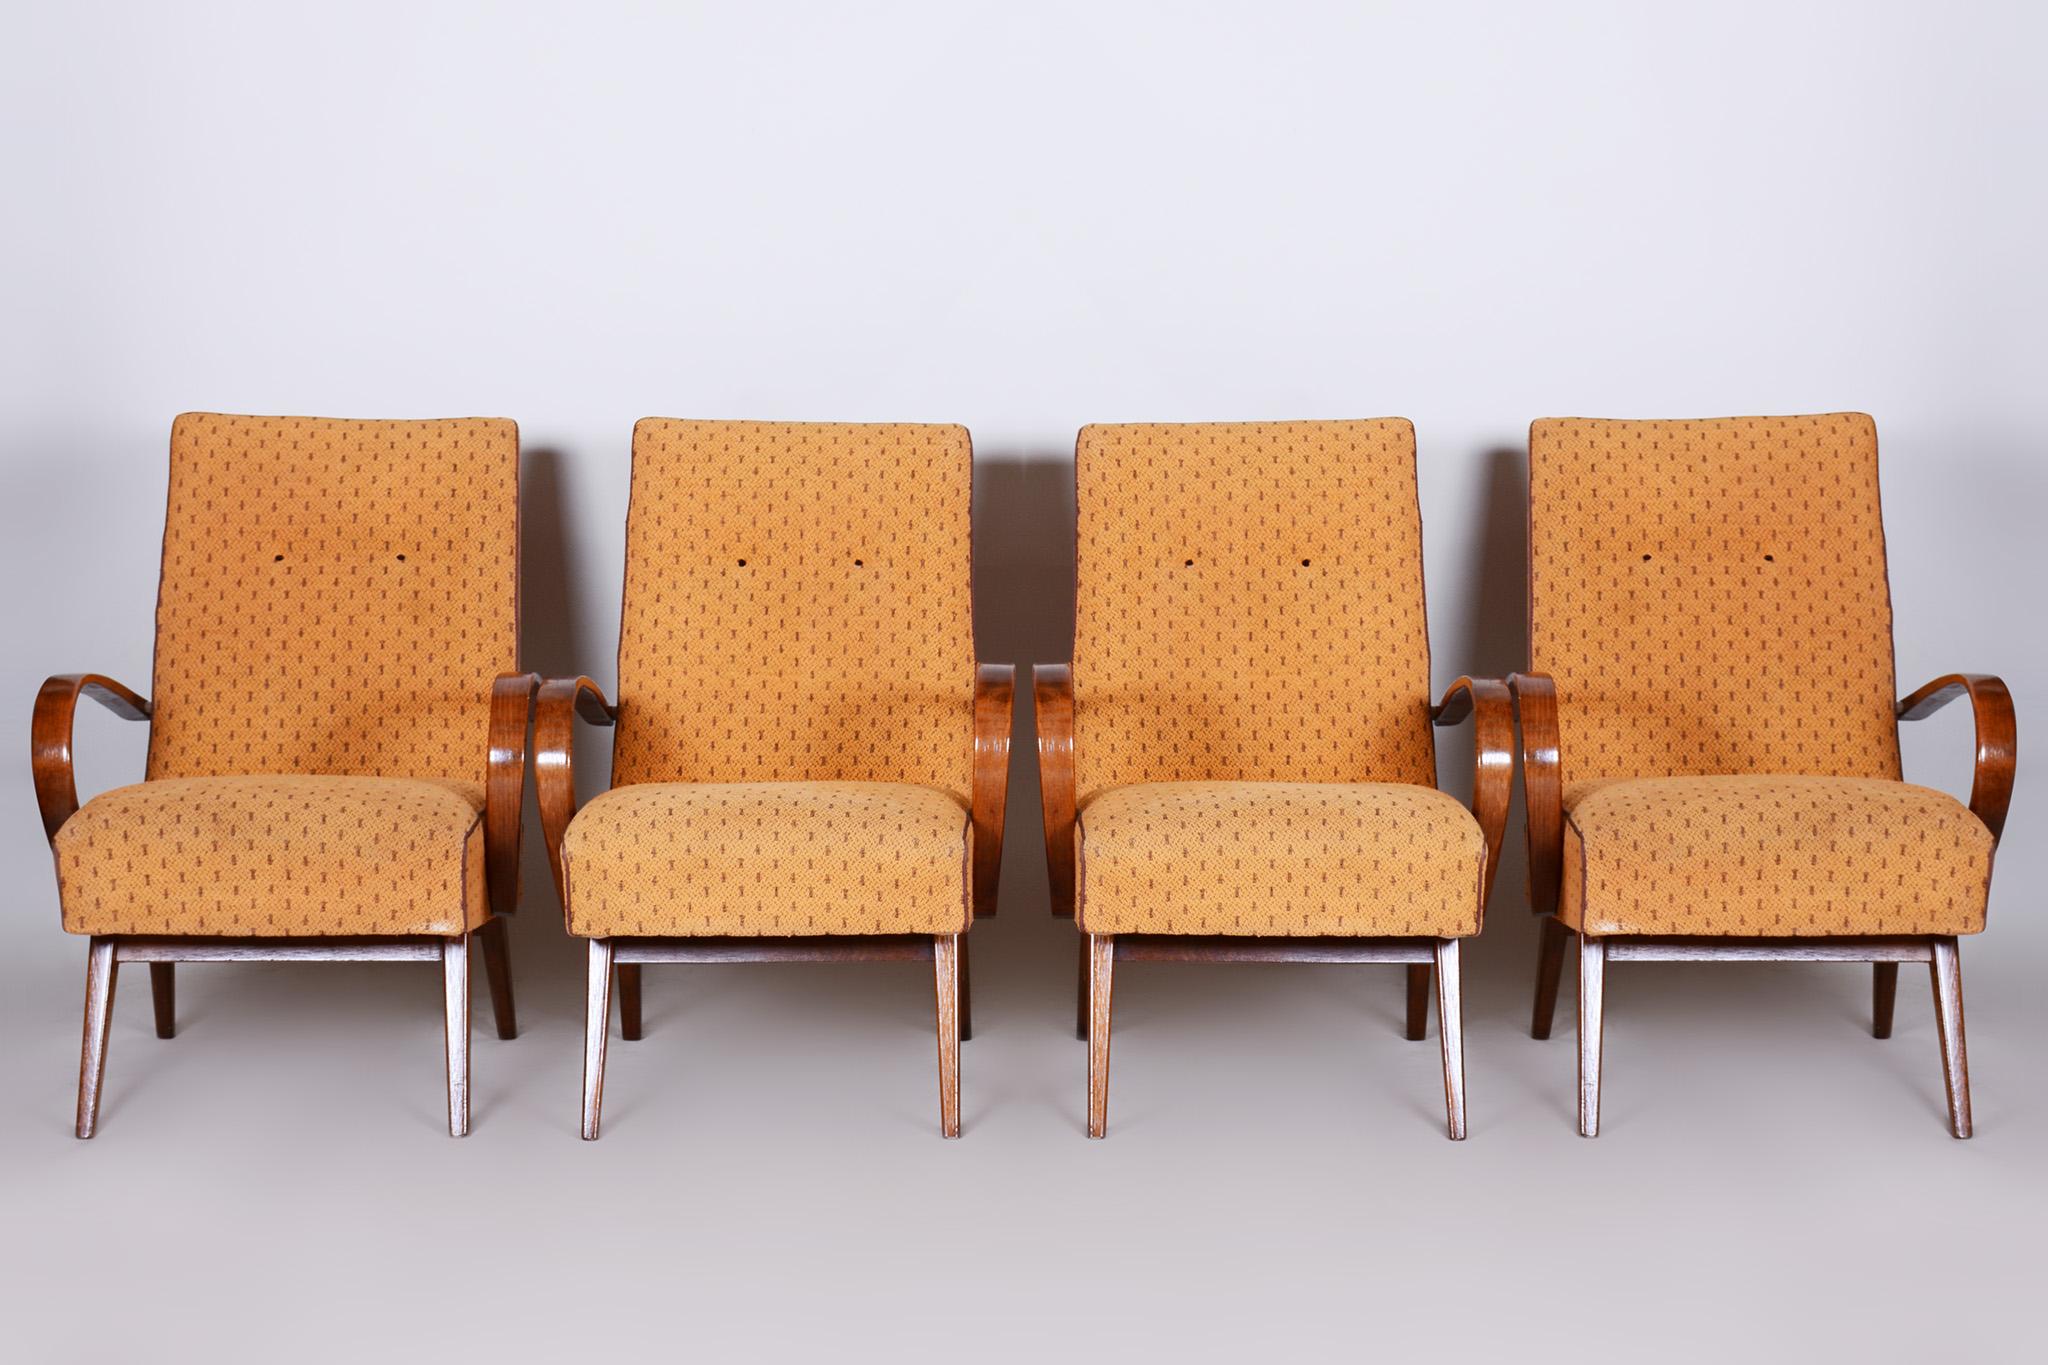 Quatre fauteuils, milieu du siècle, Tchécoslovaquie
Période 1950-1960.
Matériau : Hêtre.





